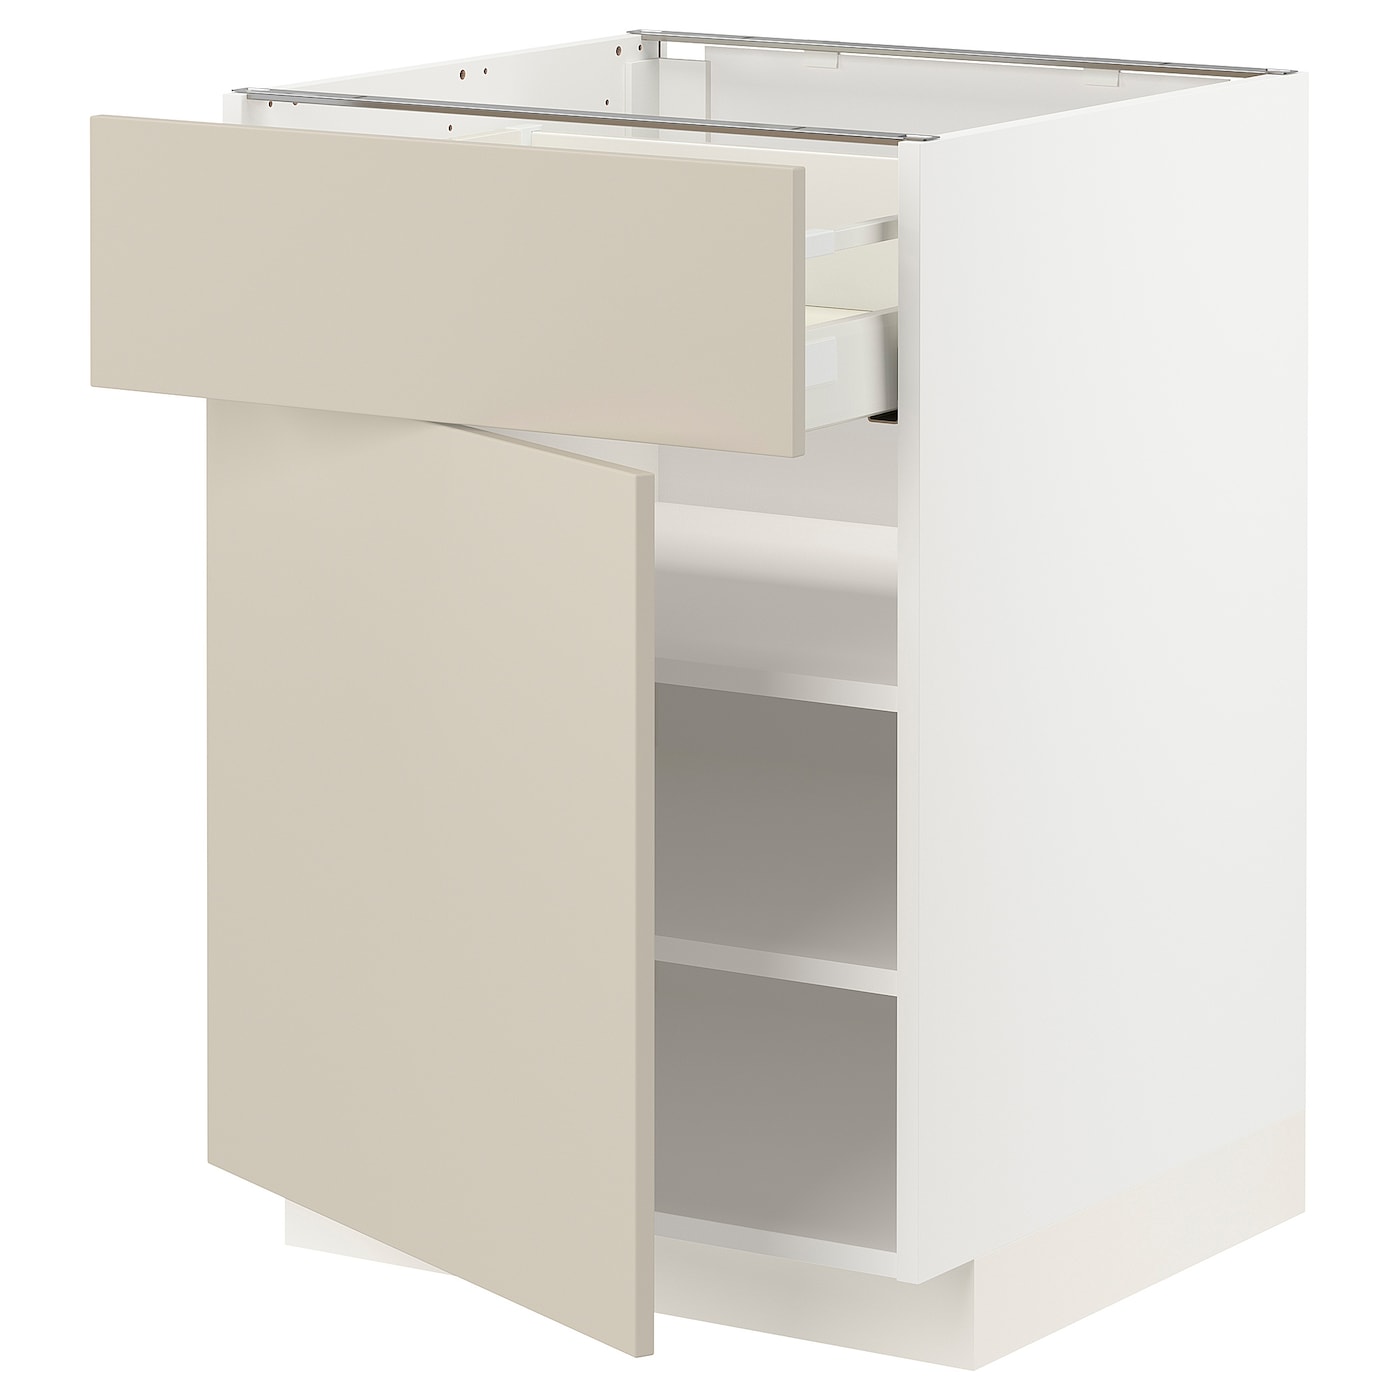 Напольный шкаф - IKEA METOD MAXIMERA, 88x62x60см, белый/бежевый, МЕТОД МАКСИМЕРА ИКЕА